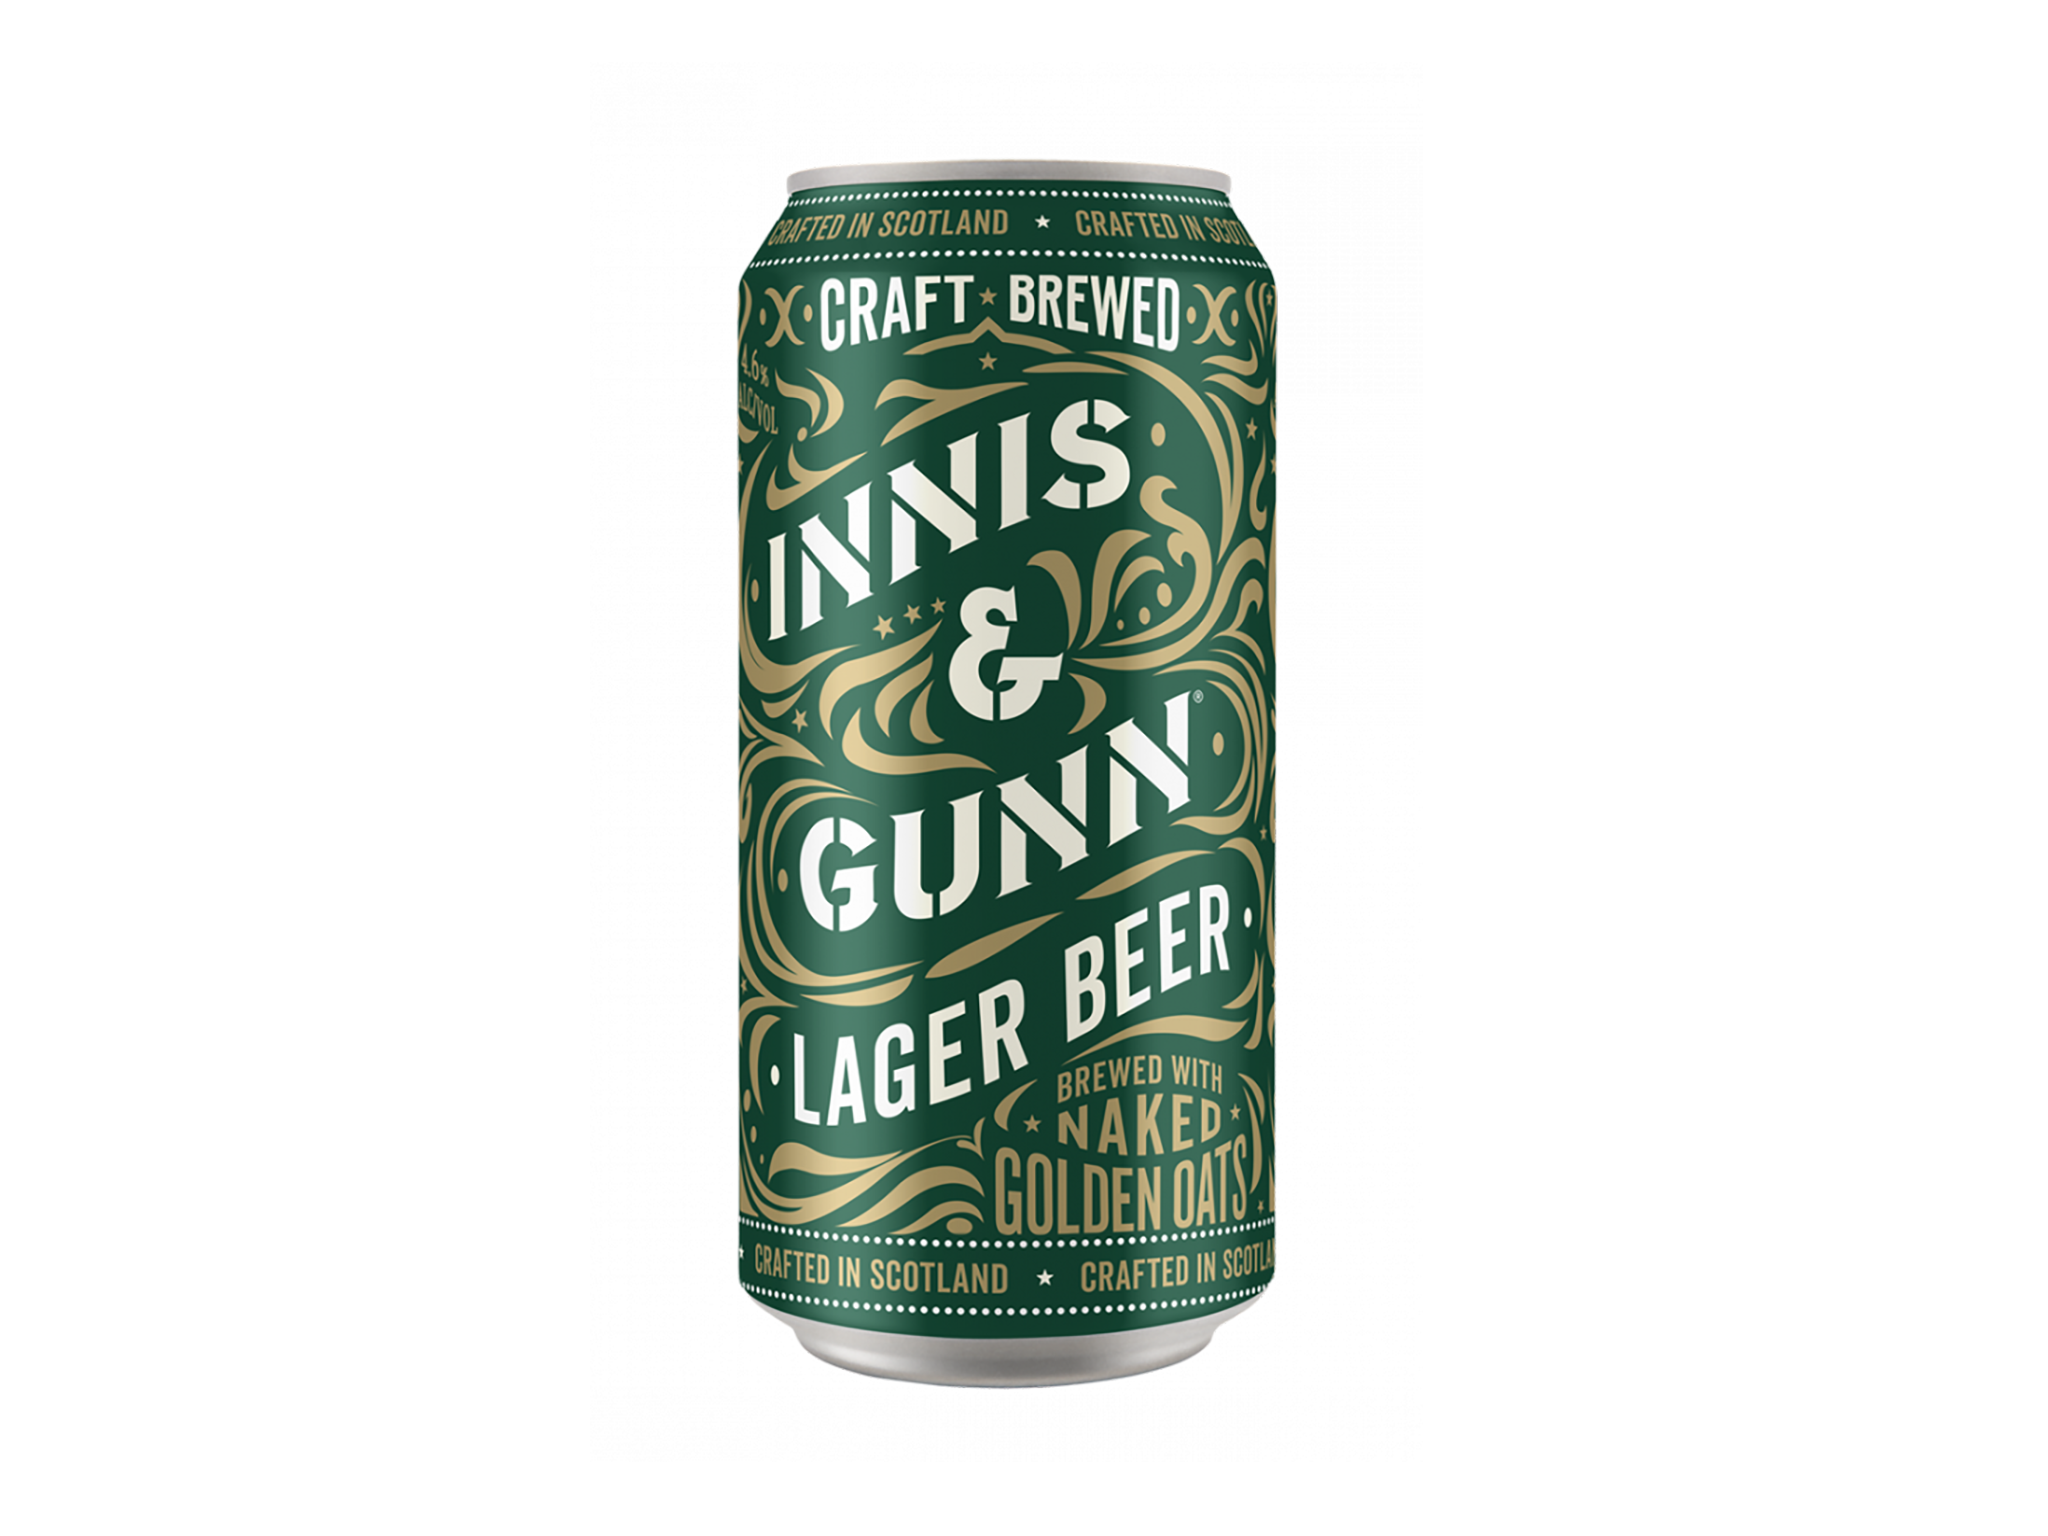 Innis & Gunn lager